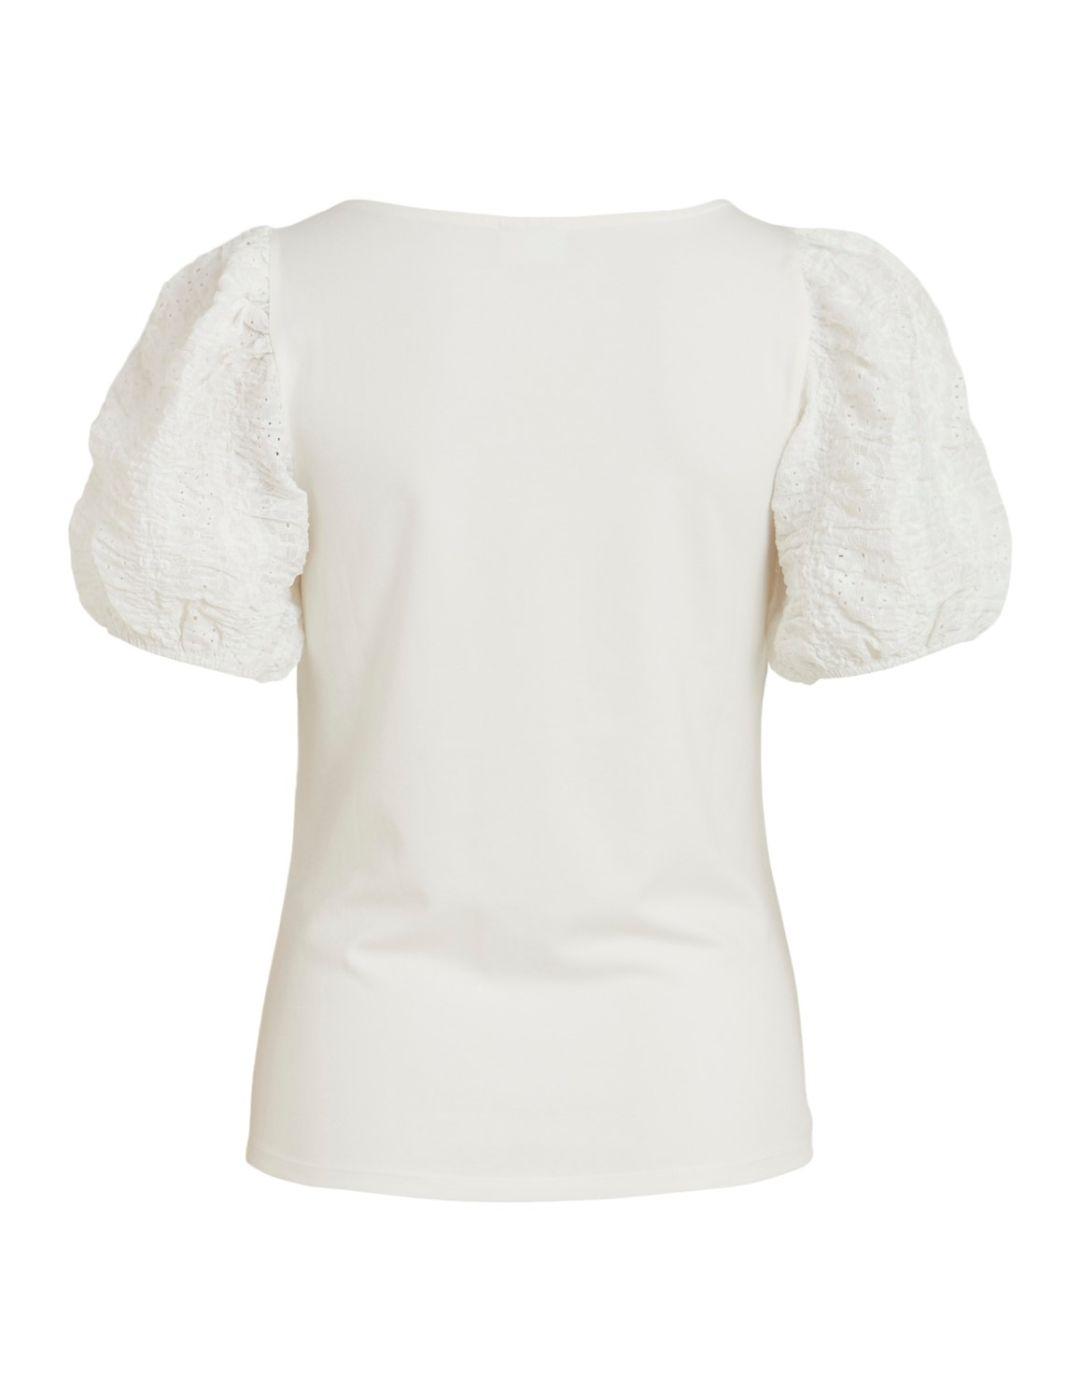 Camiseta Vila Maluna blanca para mujer-a